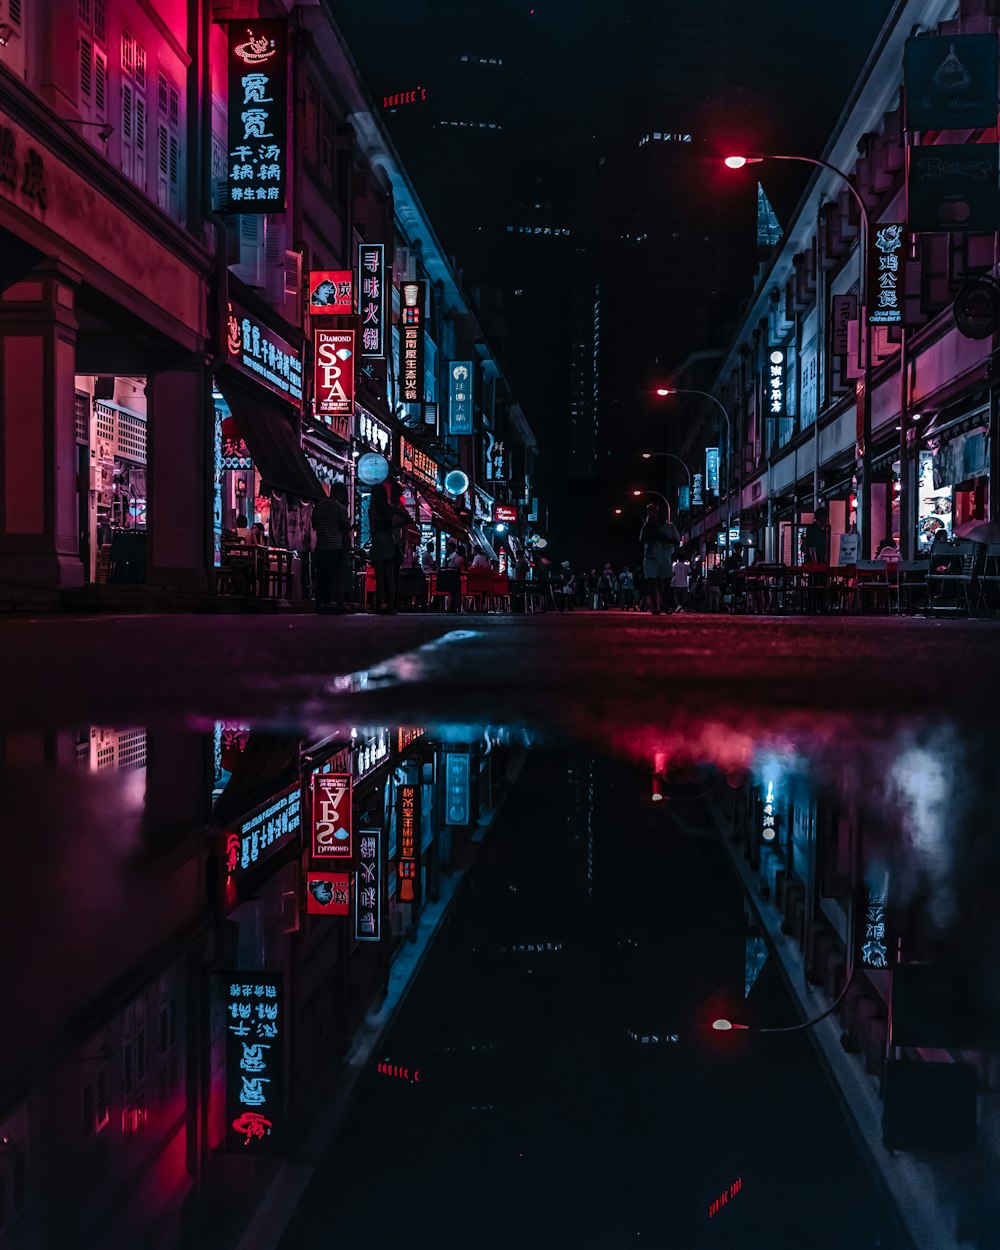 wet street in between building at night